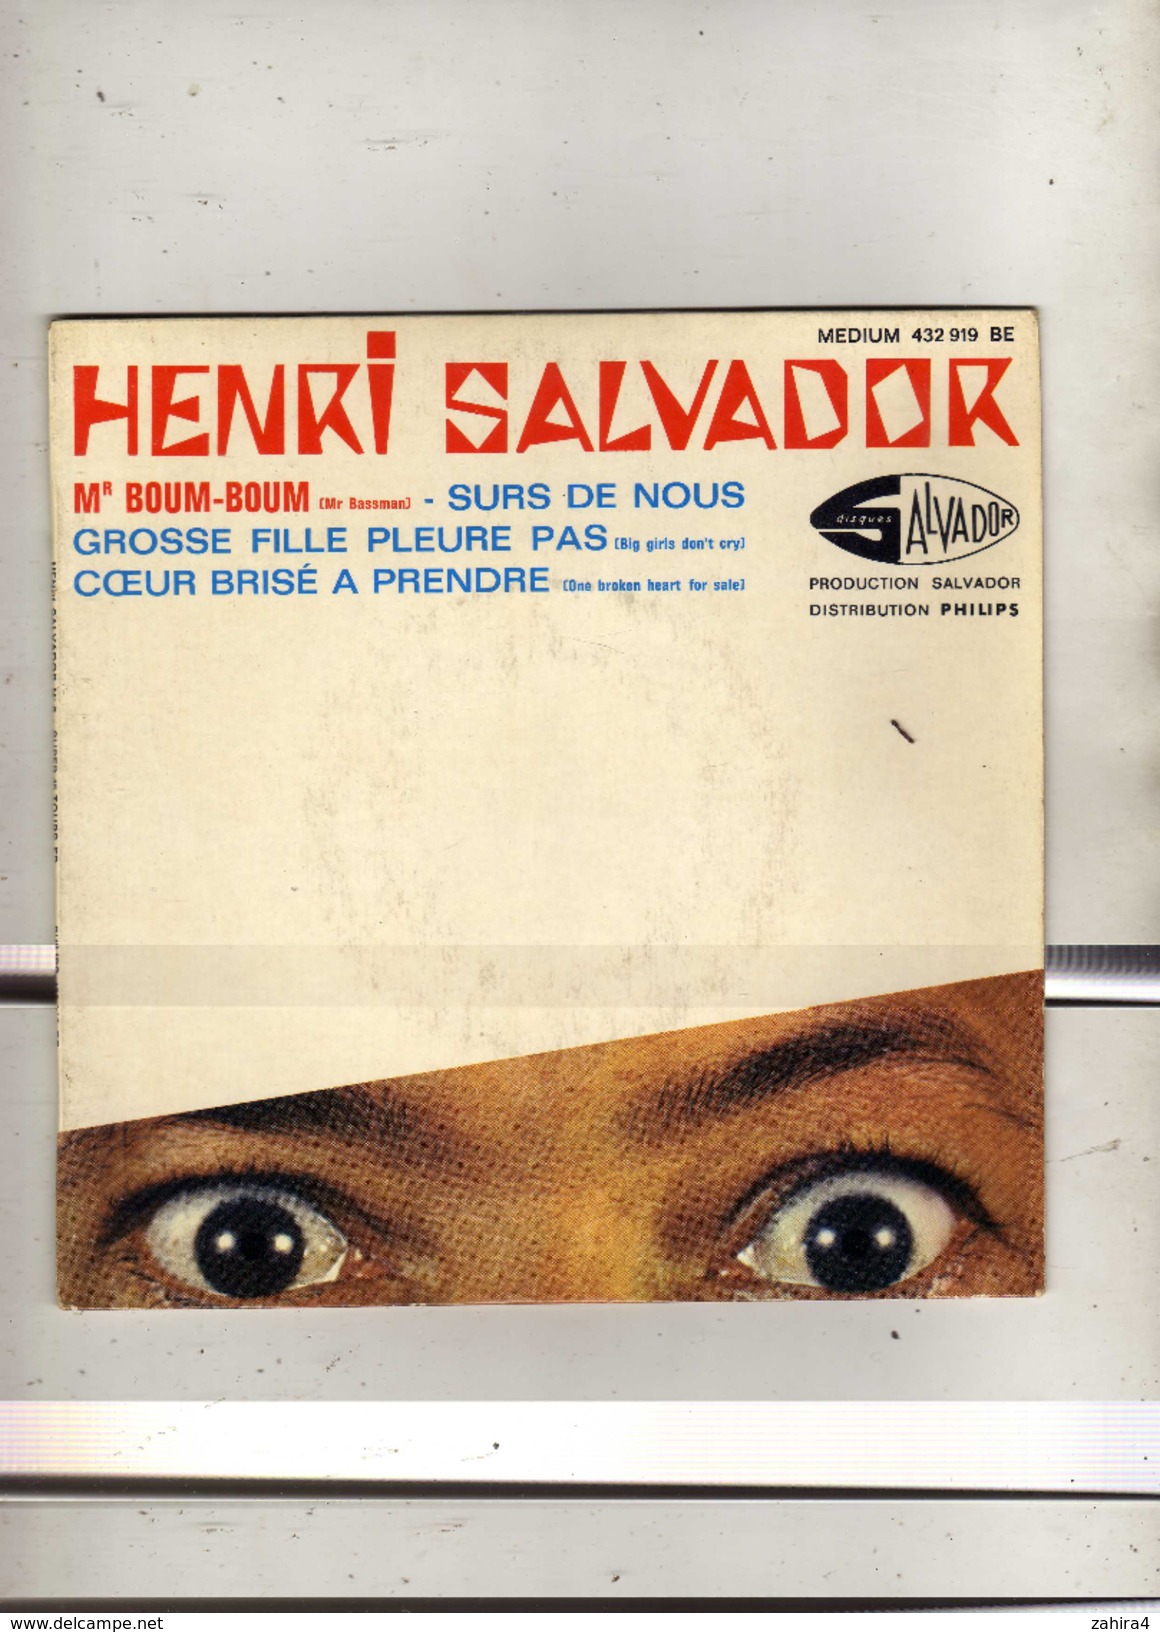 Henri Salvador - M. Boum-Boum - EP Medium 432 919 - Production Salvador - Distribution Philips - Disco, Pop